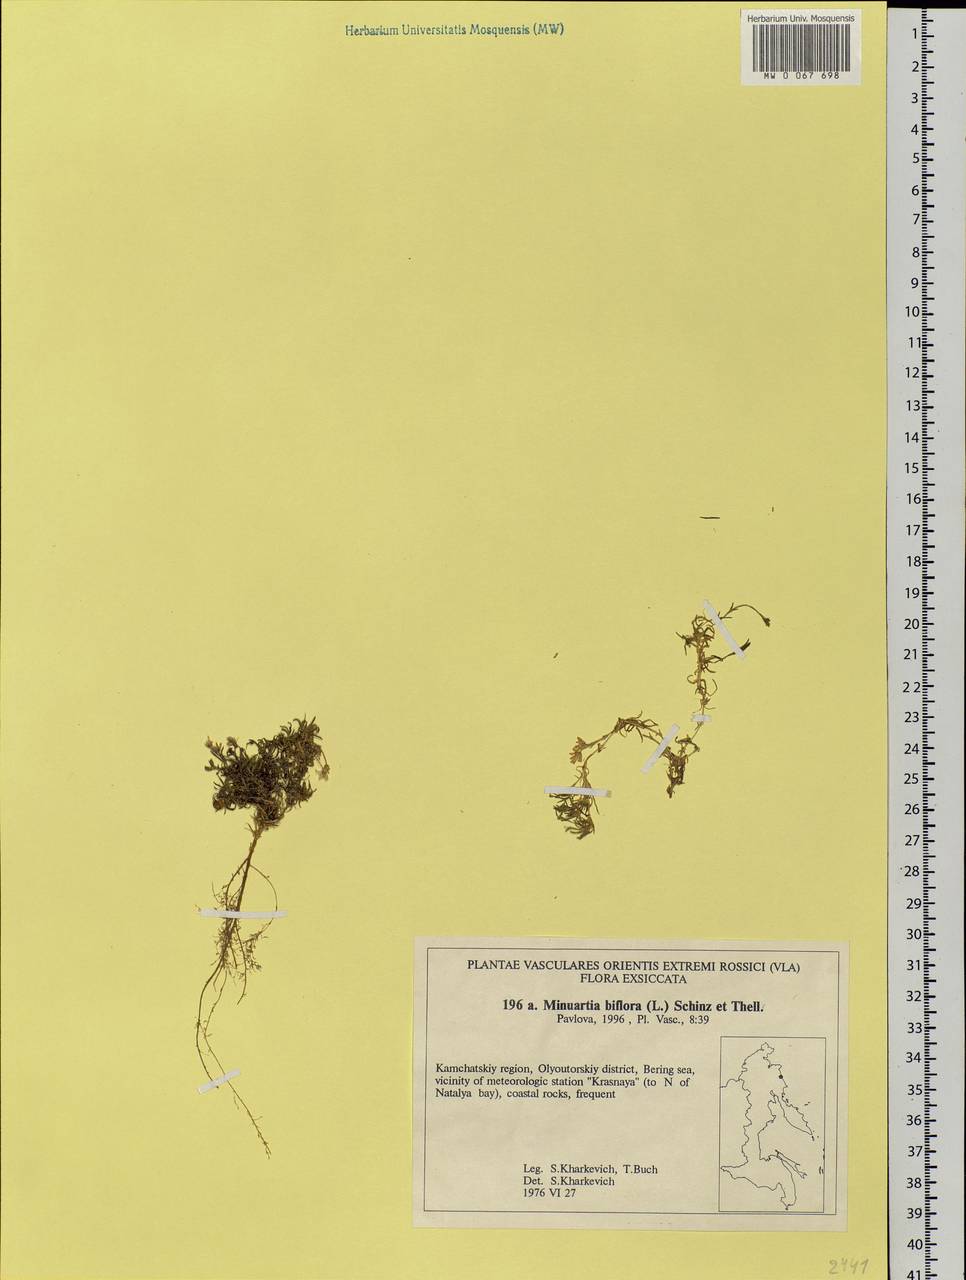 Шерлерия двухцветковая (L.) comb. ined., Сибирь, Чукотка и Камчатка (S7) (Россия)